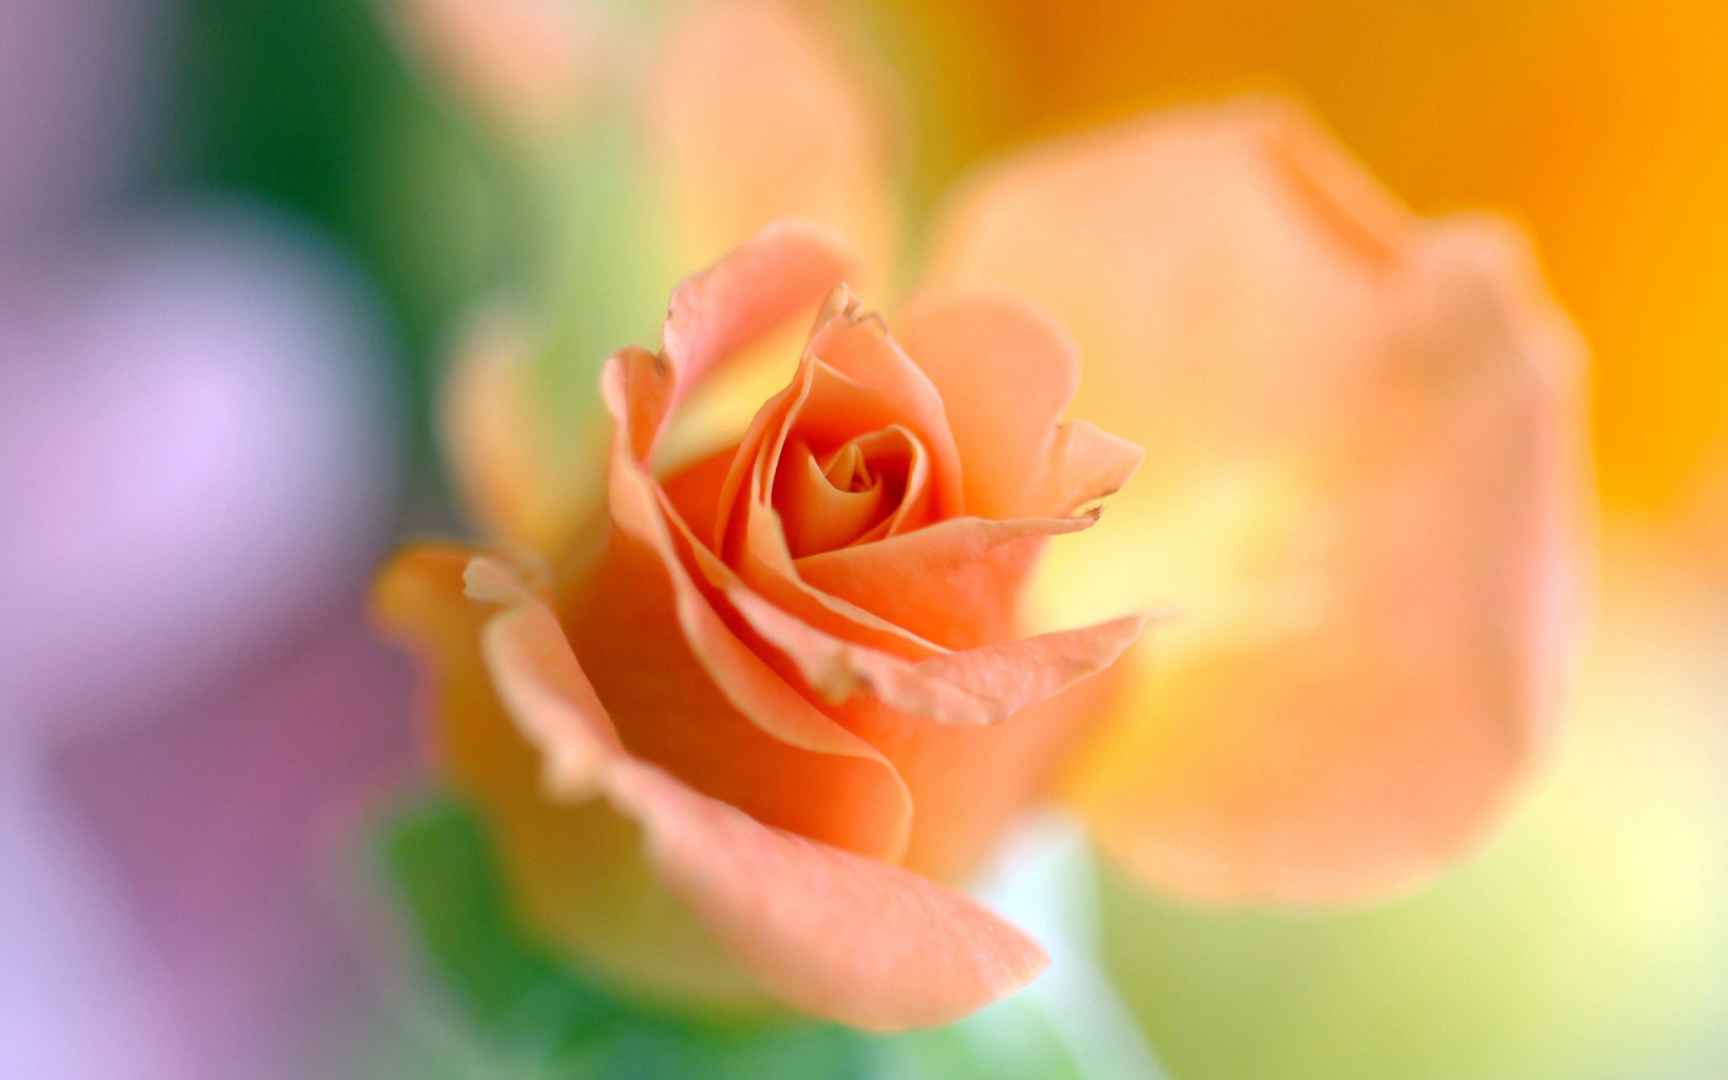 盛开的橙色玫瑰微距摄影电脑壁纸-